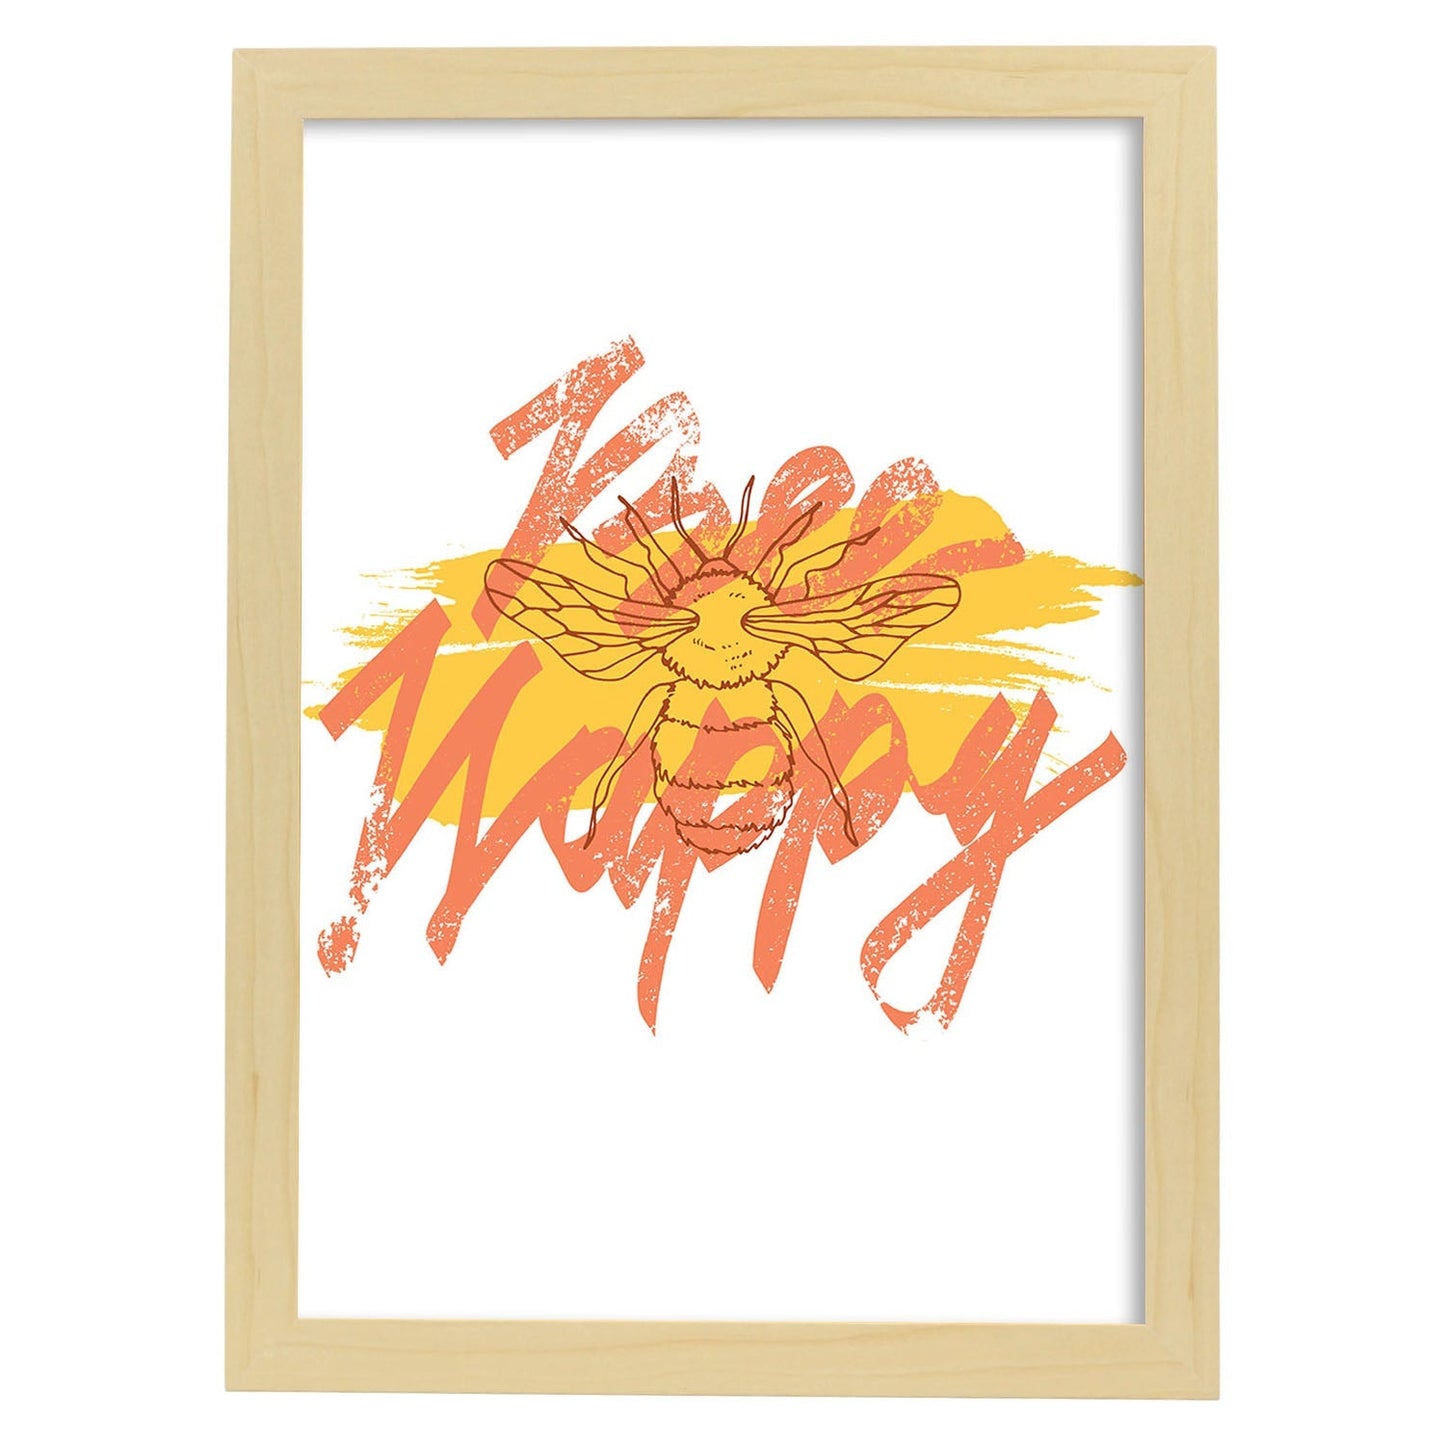 Posters con mensajes felices ilustrados. Lámina de decoración 'Bee Happy' con frases motivadoras y llenas de energia.-Artwork-Nacnic-A4-Marco Madera clara-Nacnic Estudio SL